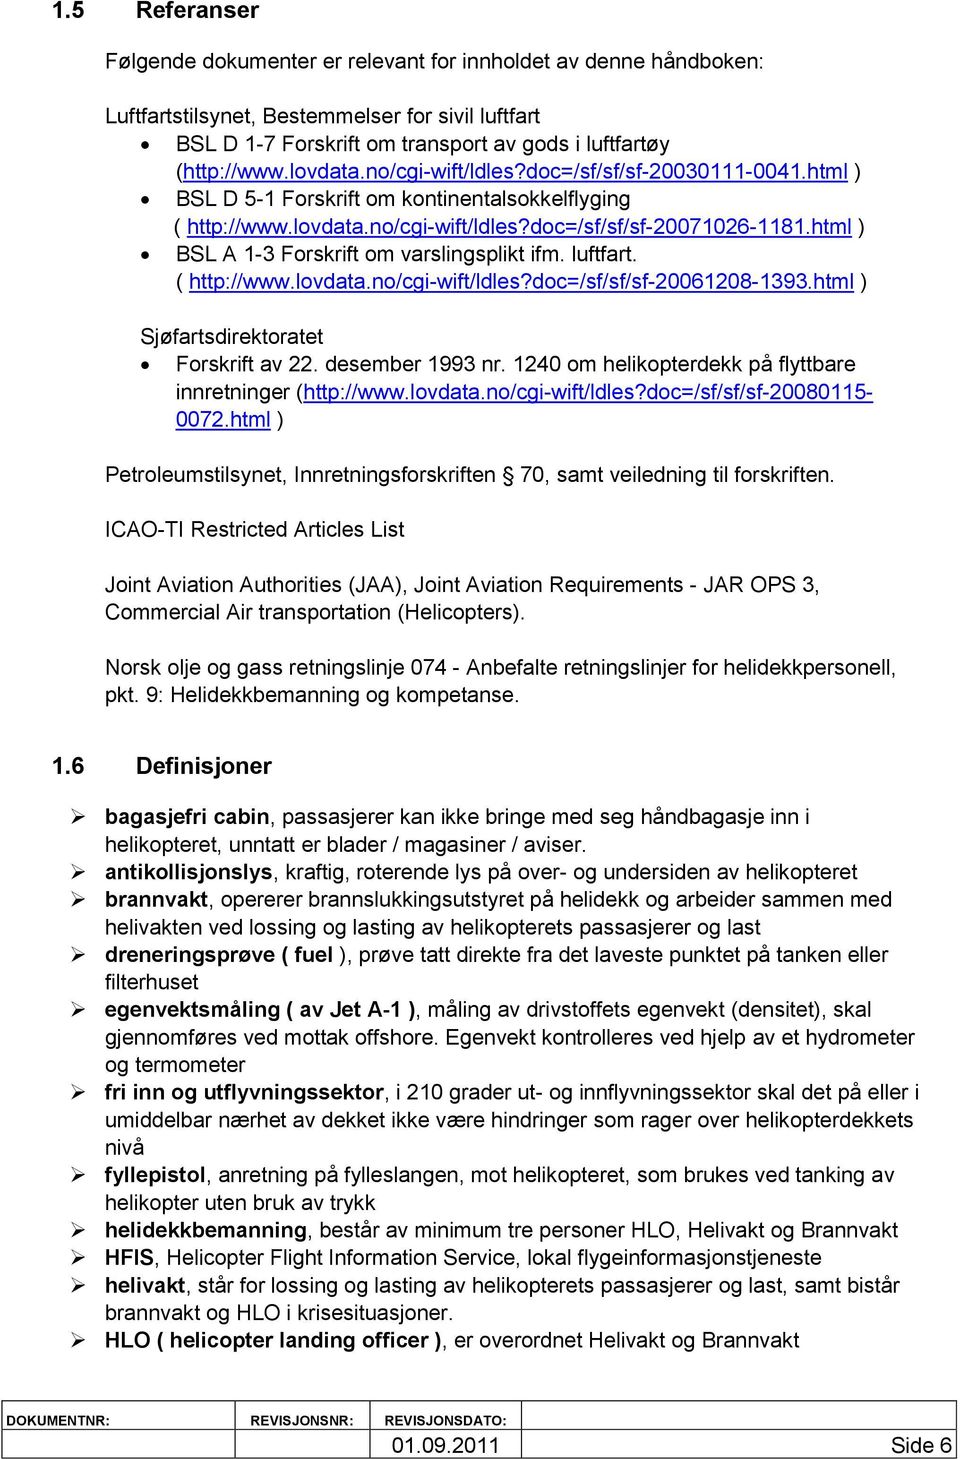 html ) BSL A 1-3 Forskrift om varslingsplikt ifm. luftfart. ( http://www.lovdata.no/cgi-wift/ldles?doc=/sf/sf/sf-20061208-1393.html ) Sjøfartsdirektoratet Forskrift av 22. desember 1993 nr.